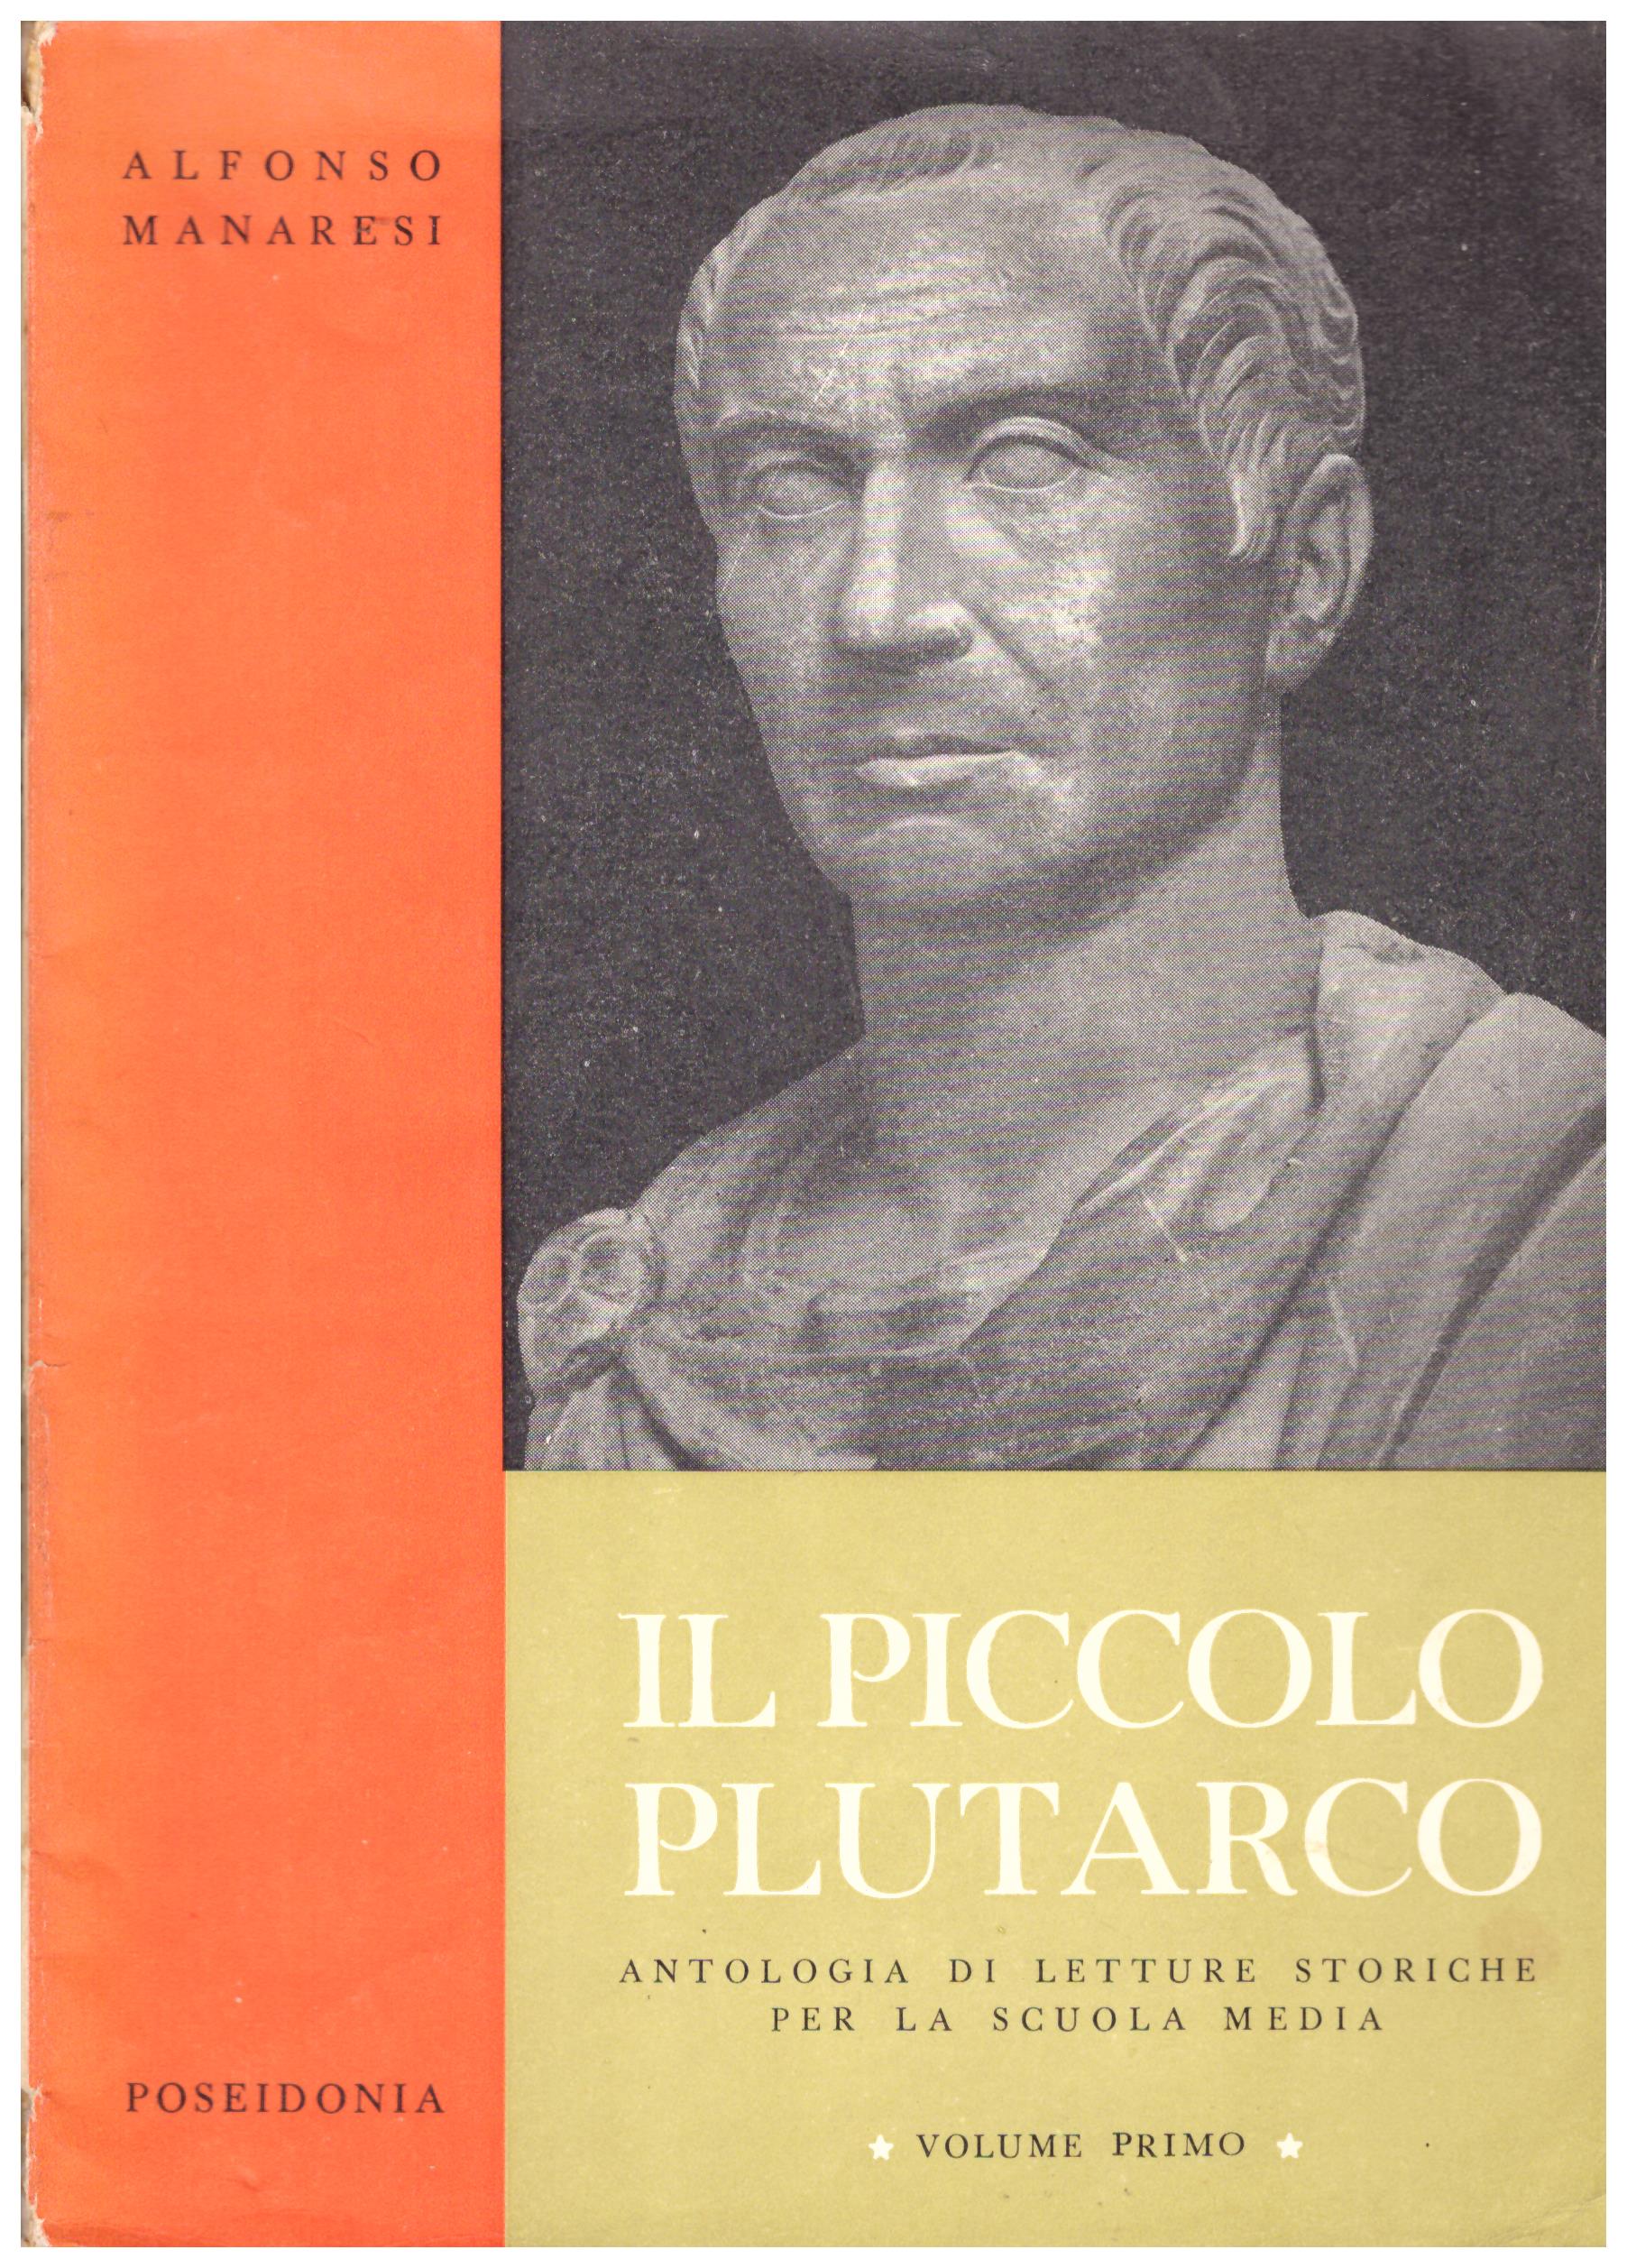  Il piccolo Plutarco. Antologia di letture storiche per la scuola media.